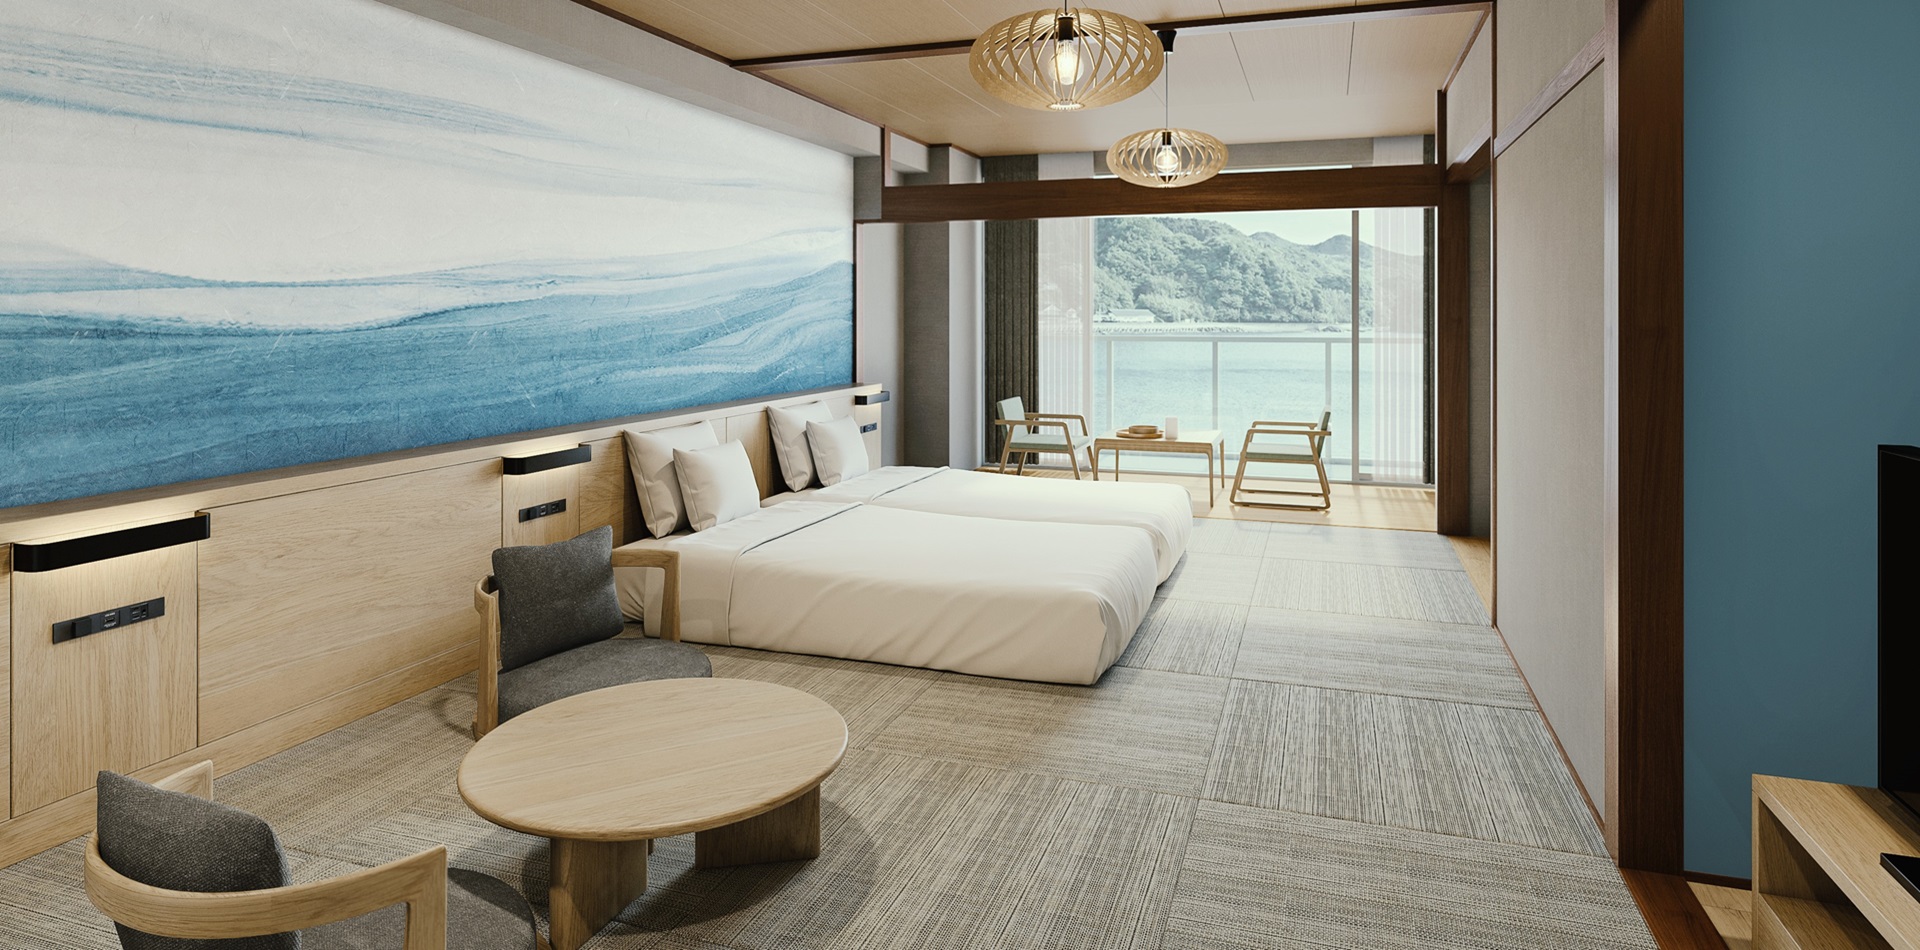 勝浦の海をモチーフとした内装の和洋室